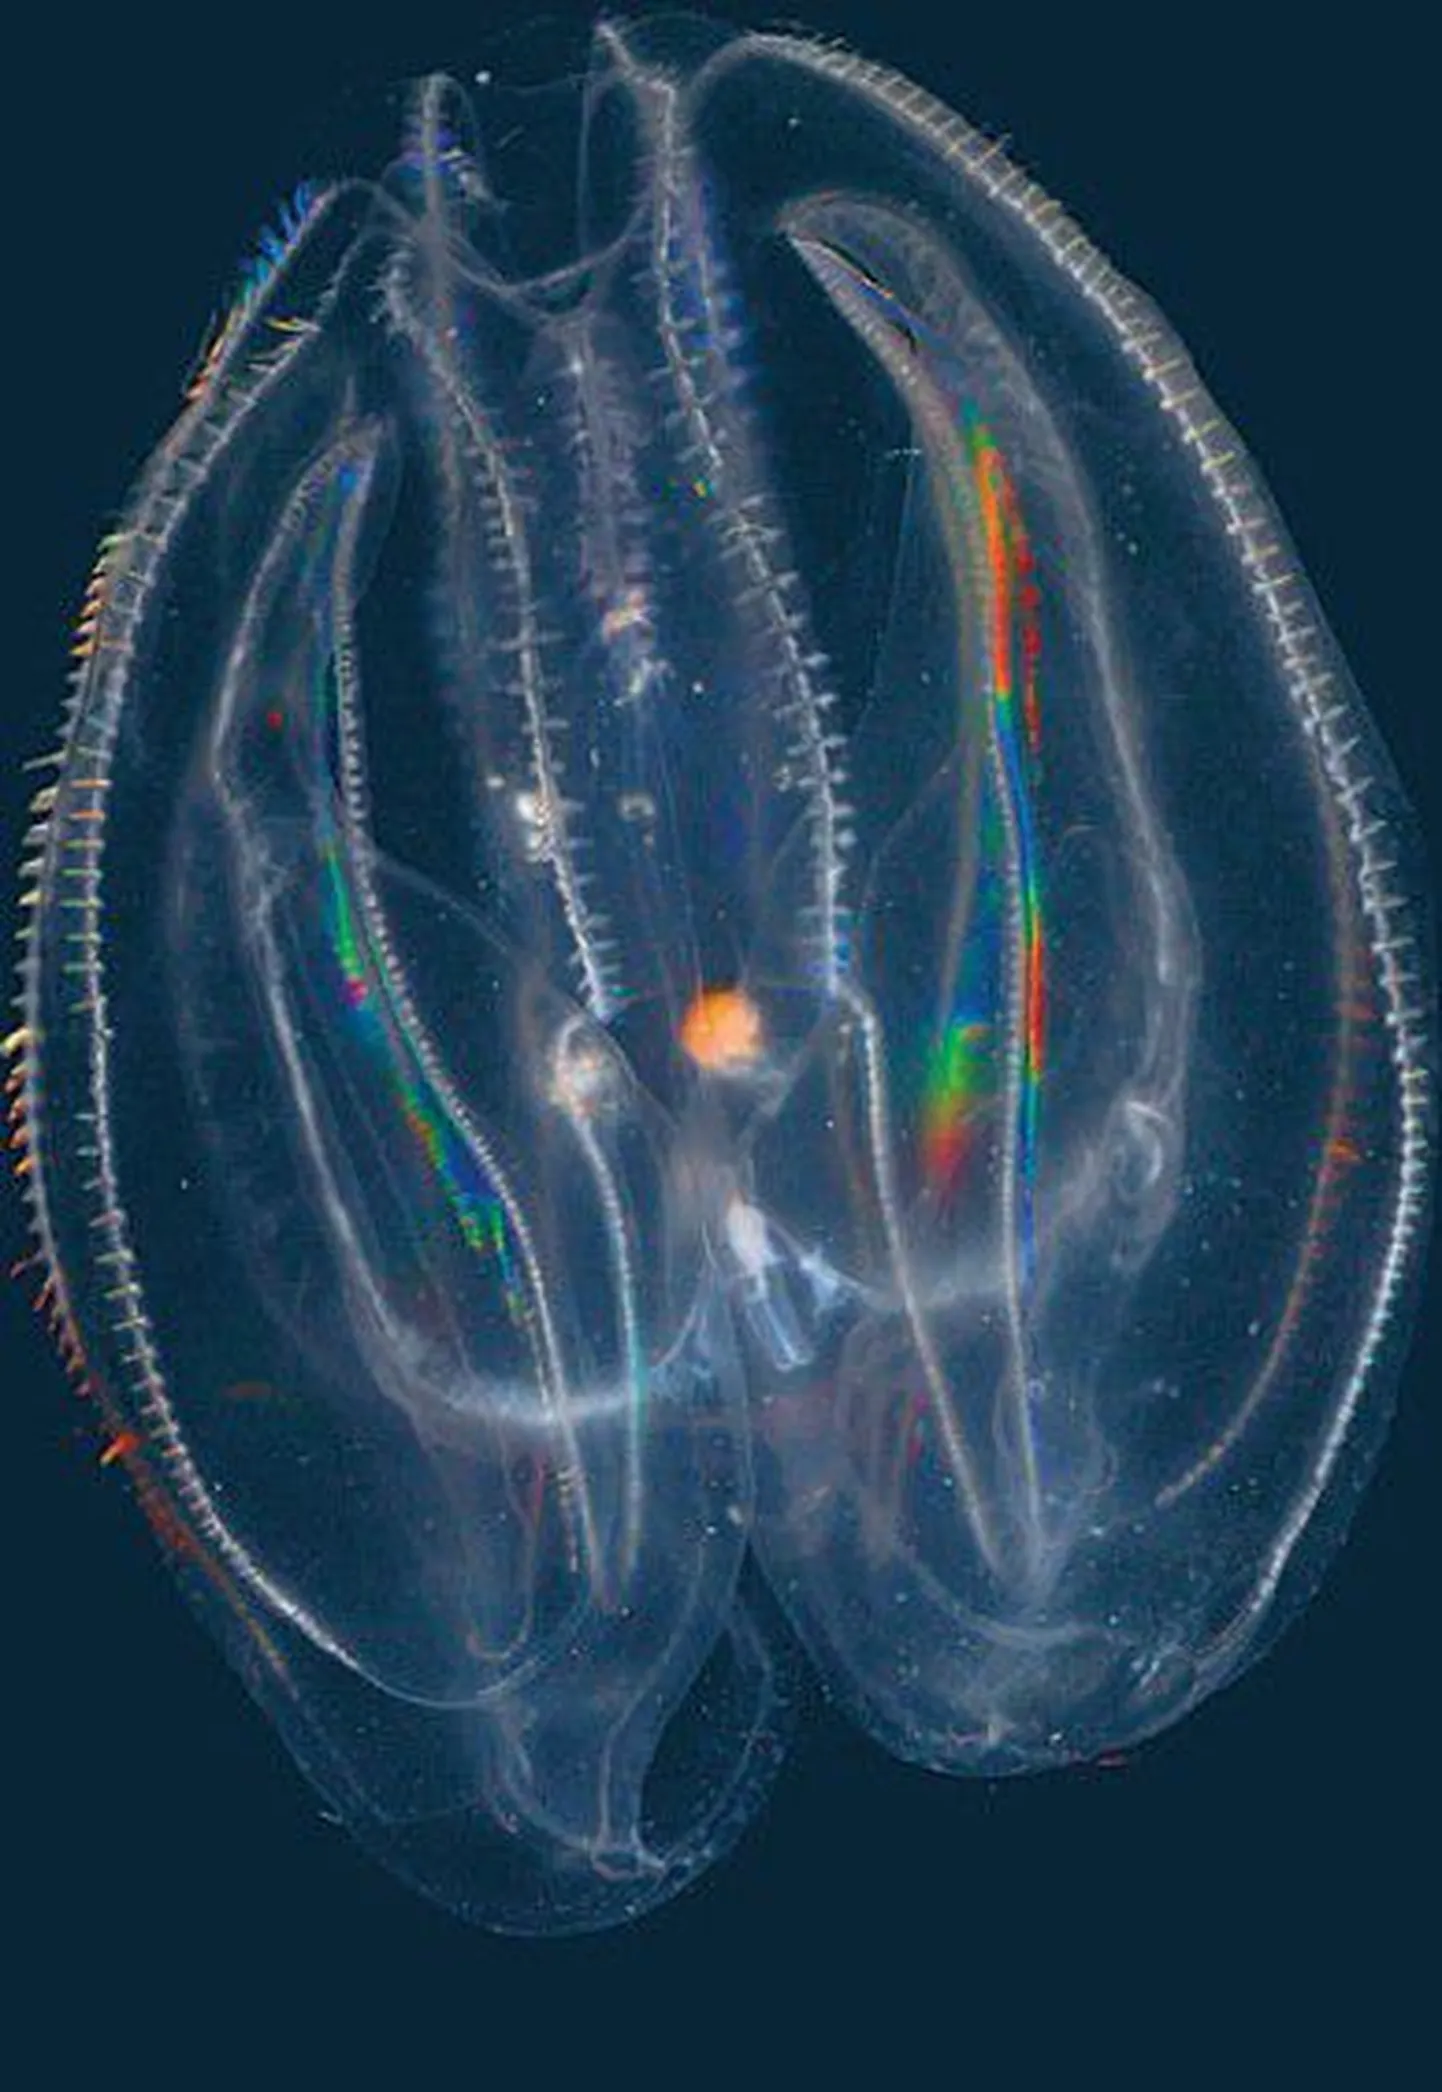 Согласно заявлению комиссии 9 стран, состав фауны Балтийского моря резко деградирует. Медузы вполне могут заменить рыб. На снимке: Mnemiopsis